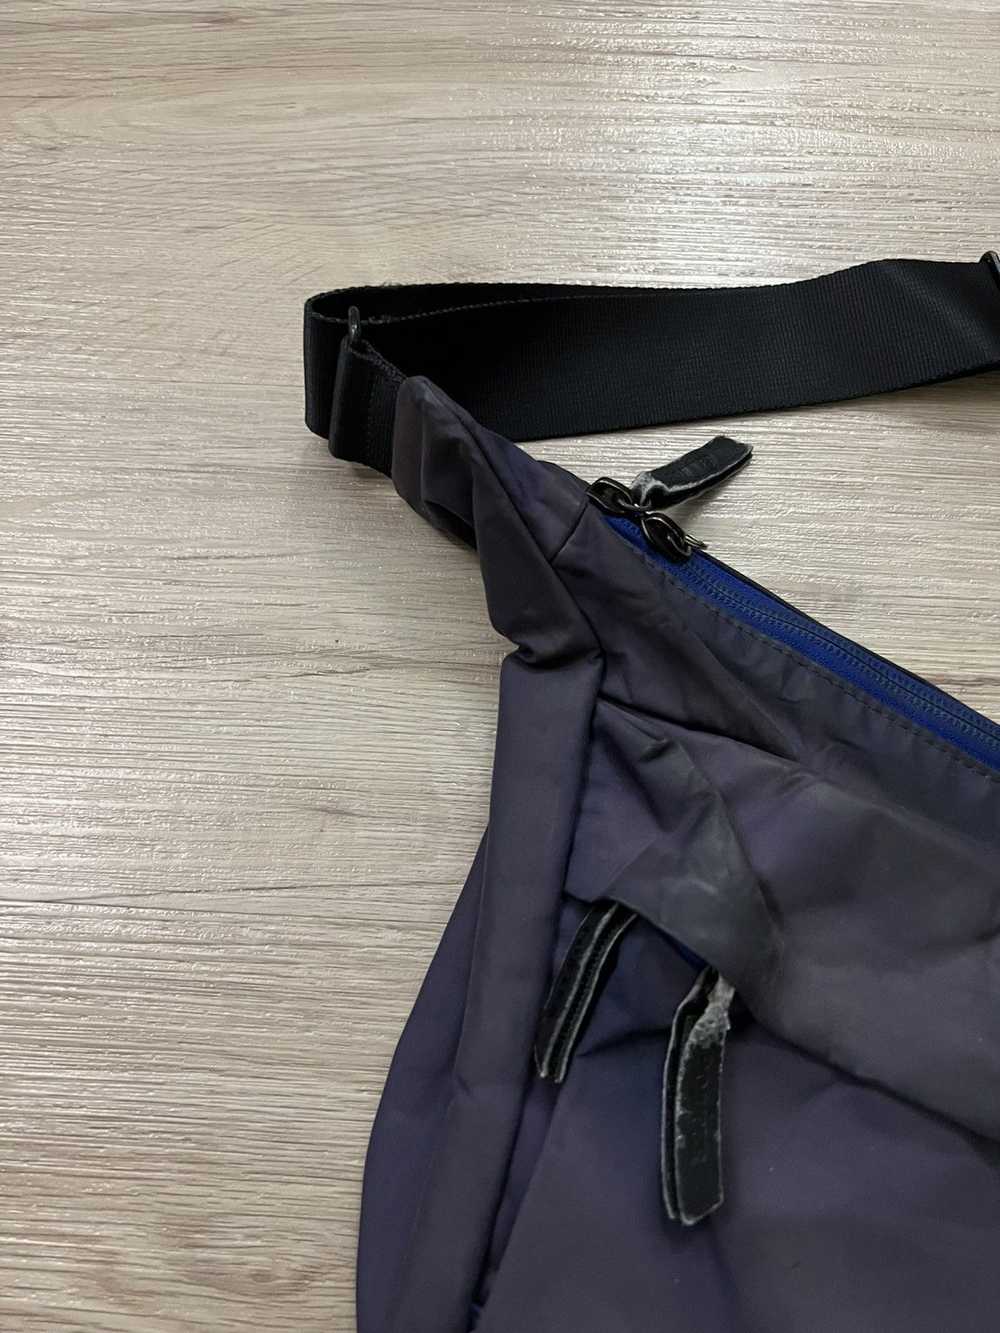 Japanese Brand × Porter Porter Sling Bag - image 3